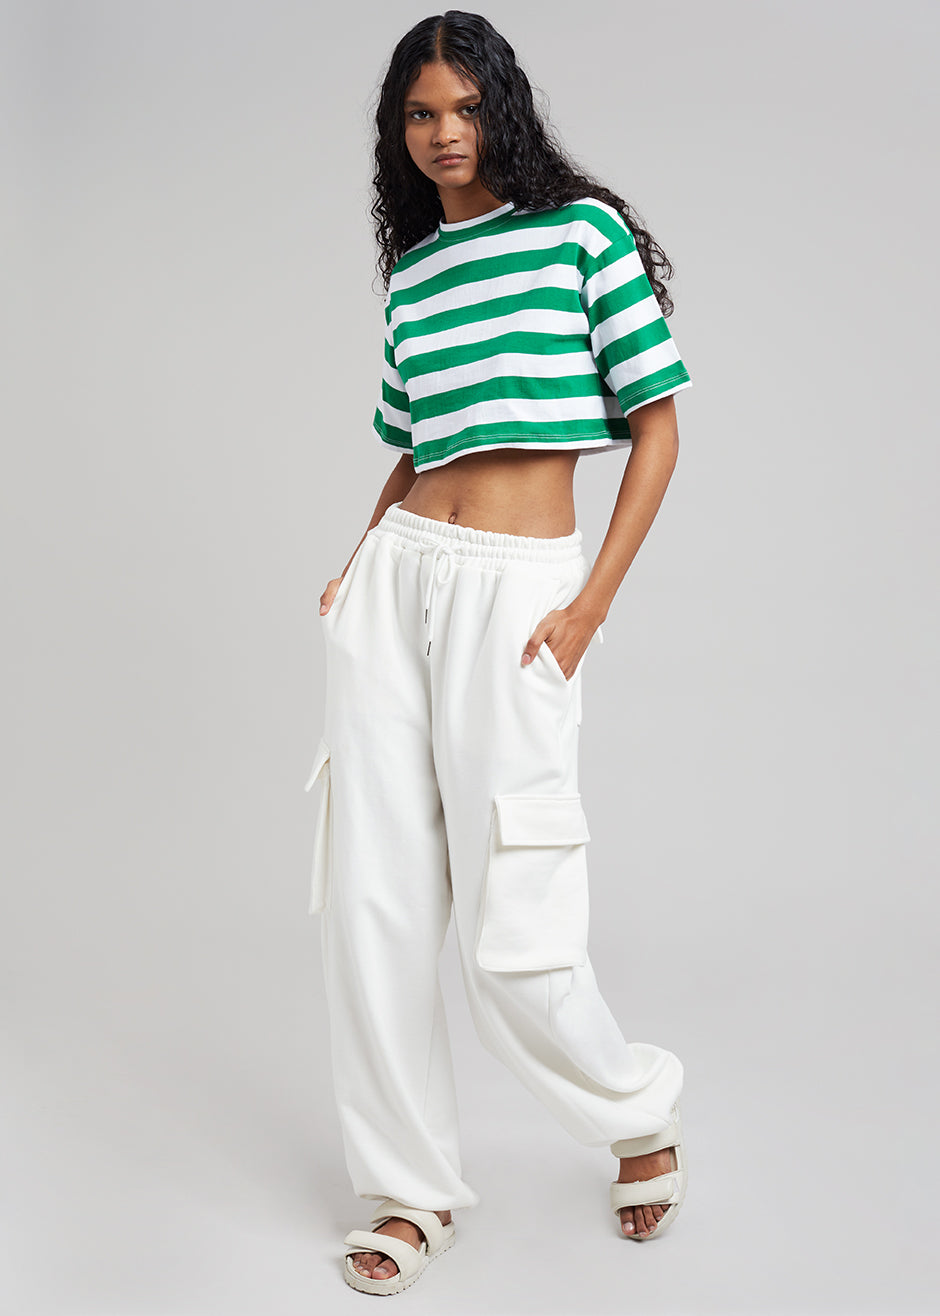 Karina Cropped T-Shirt - Green/White